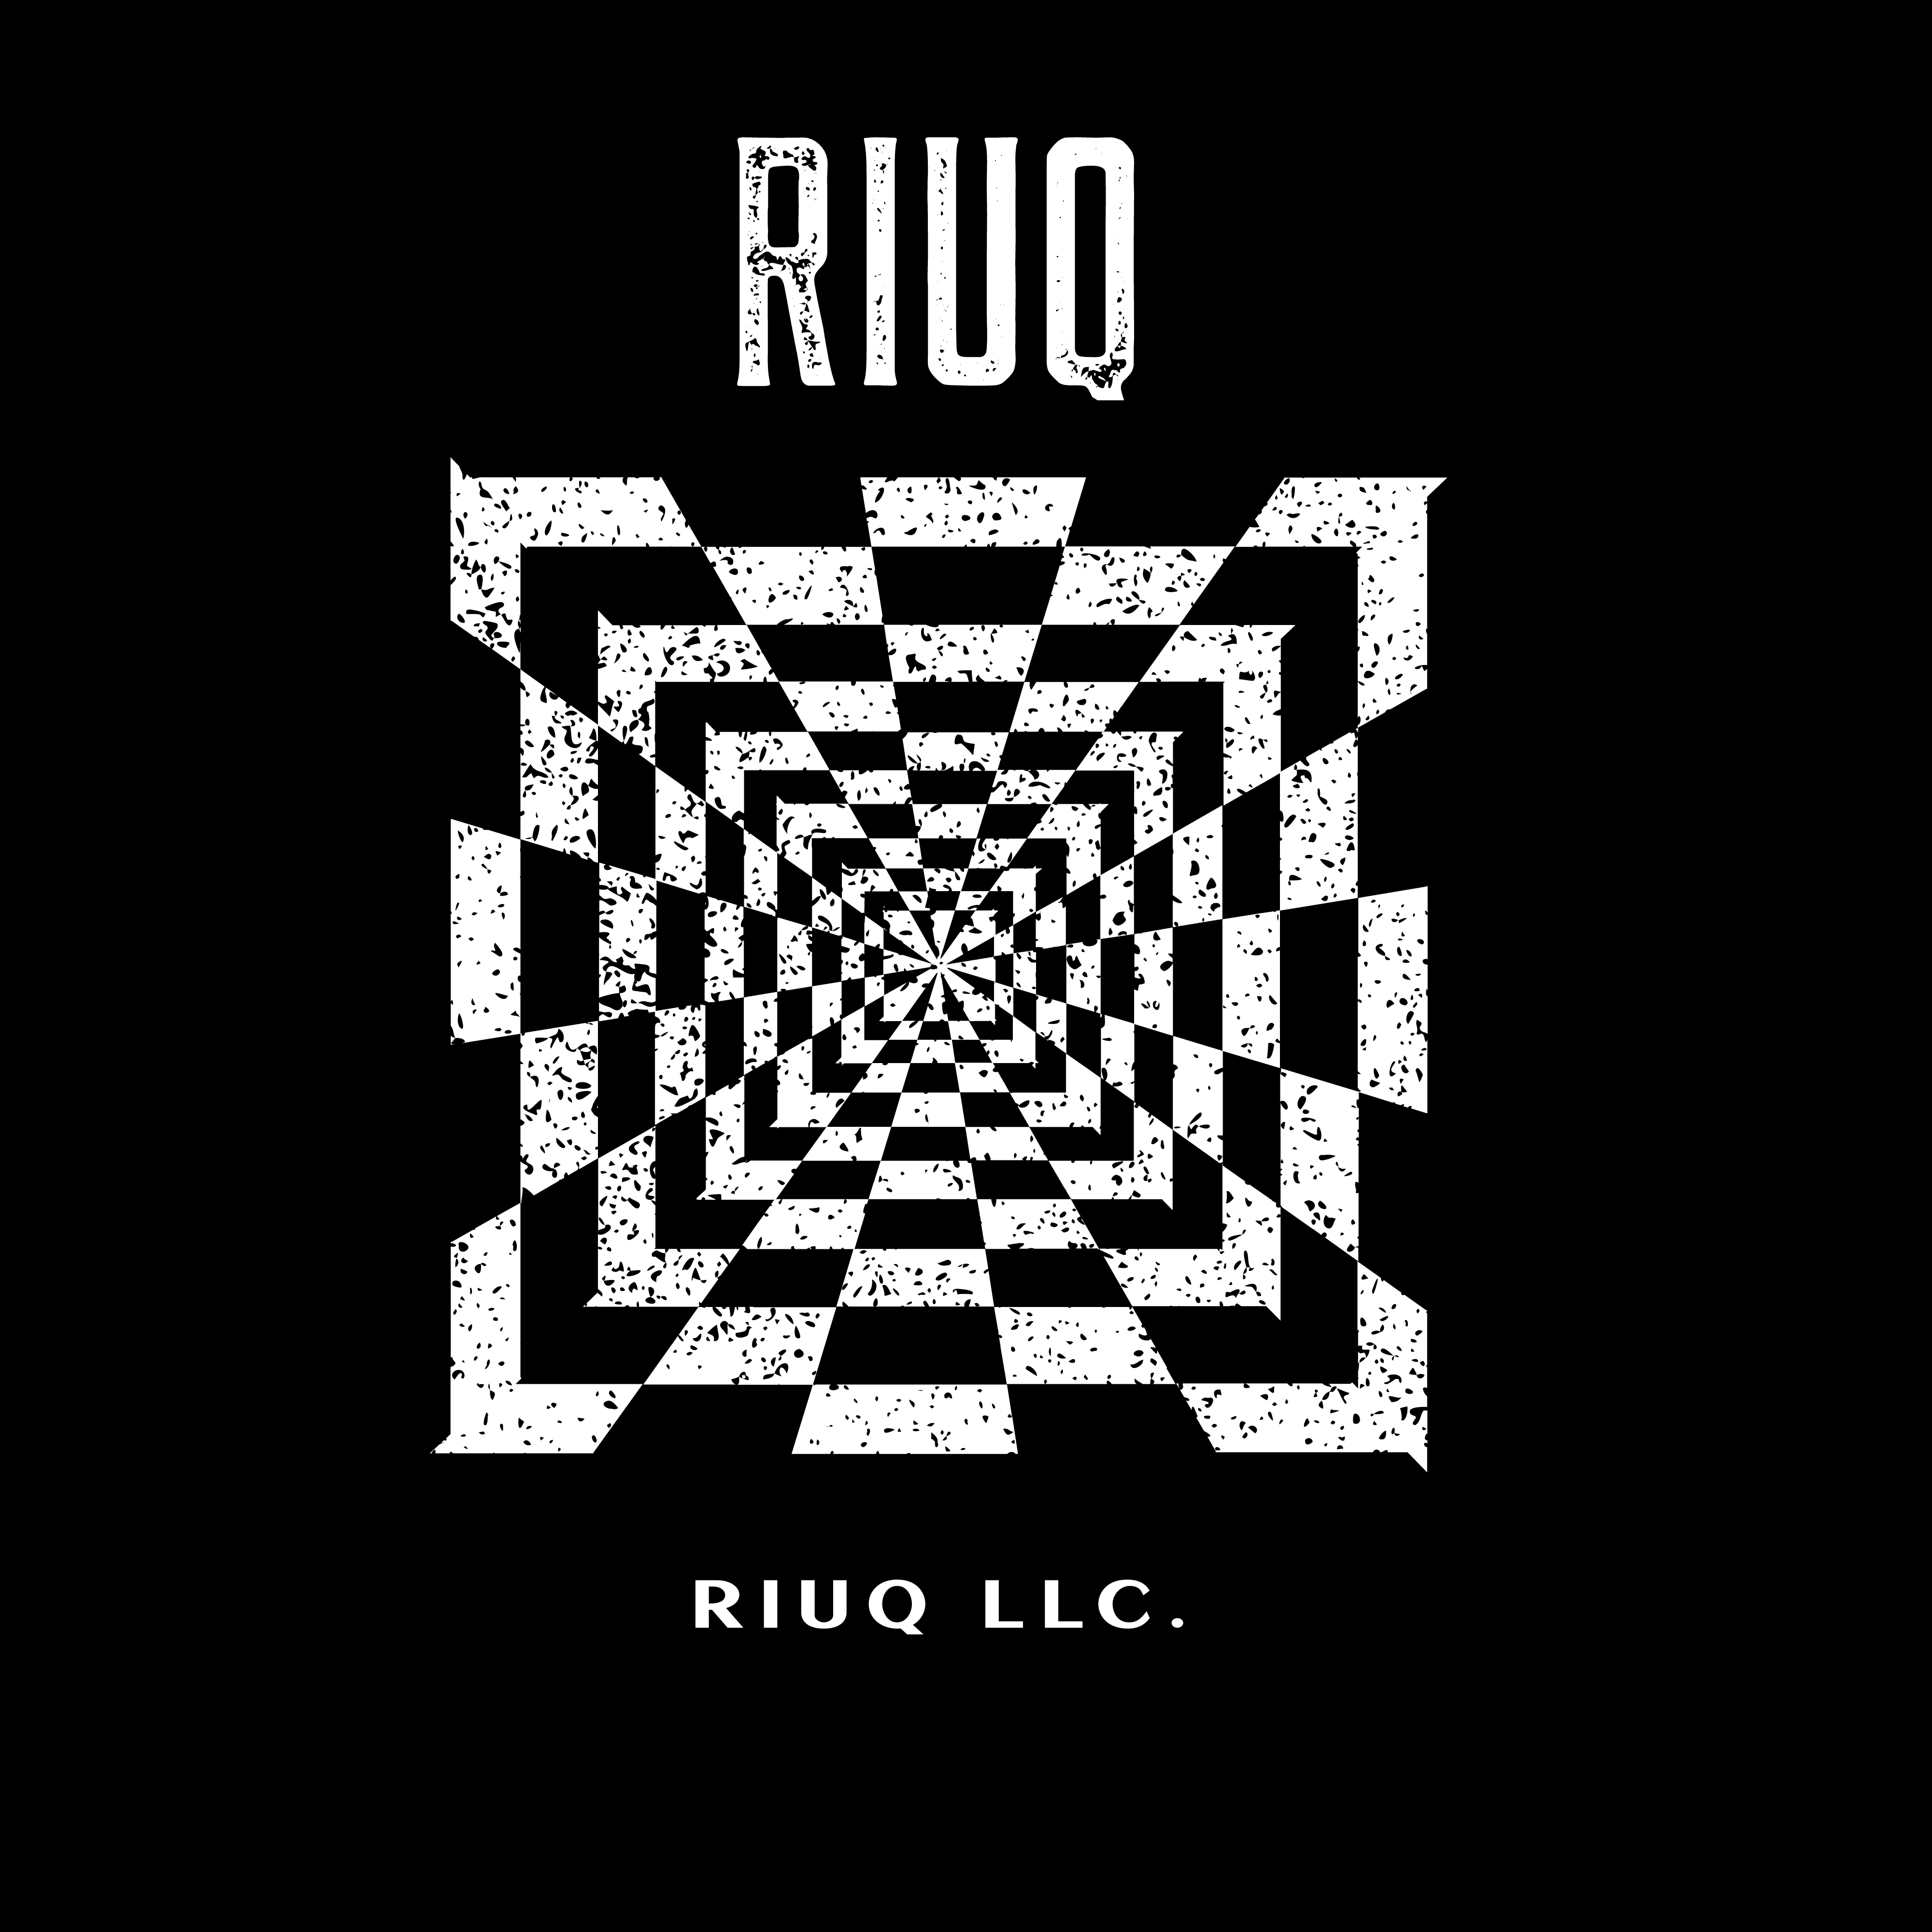 Riuq LLC